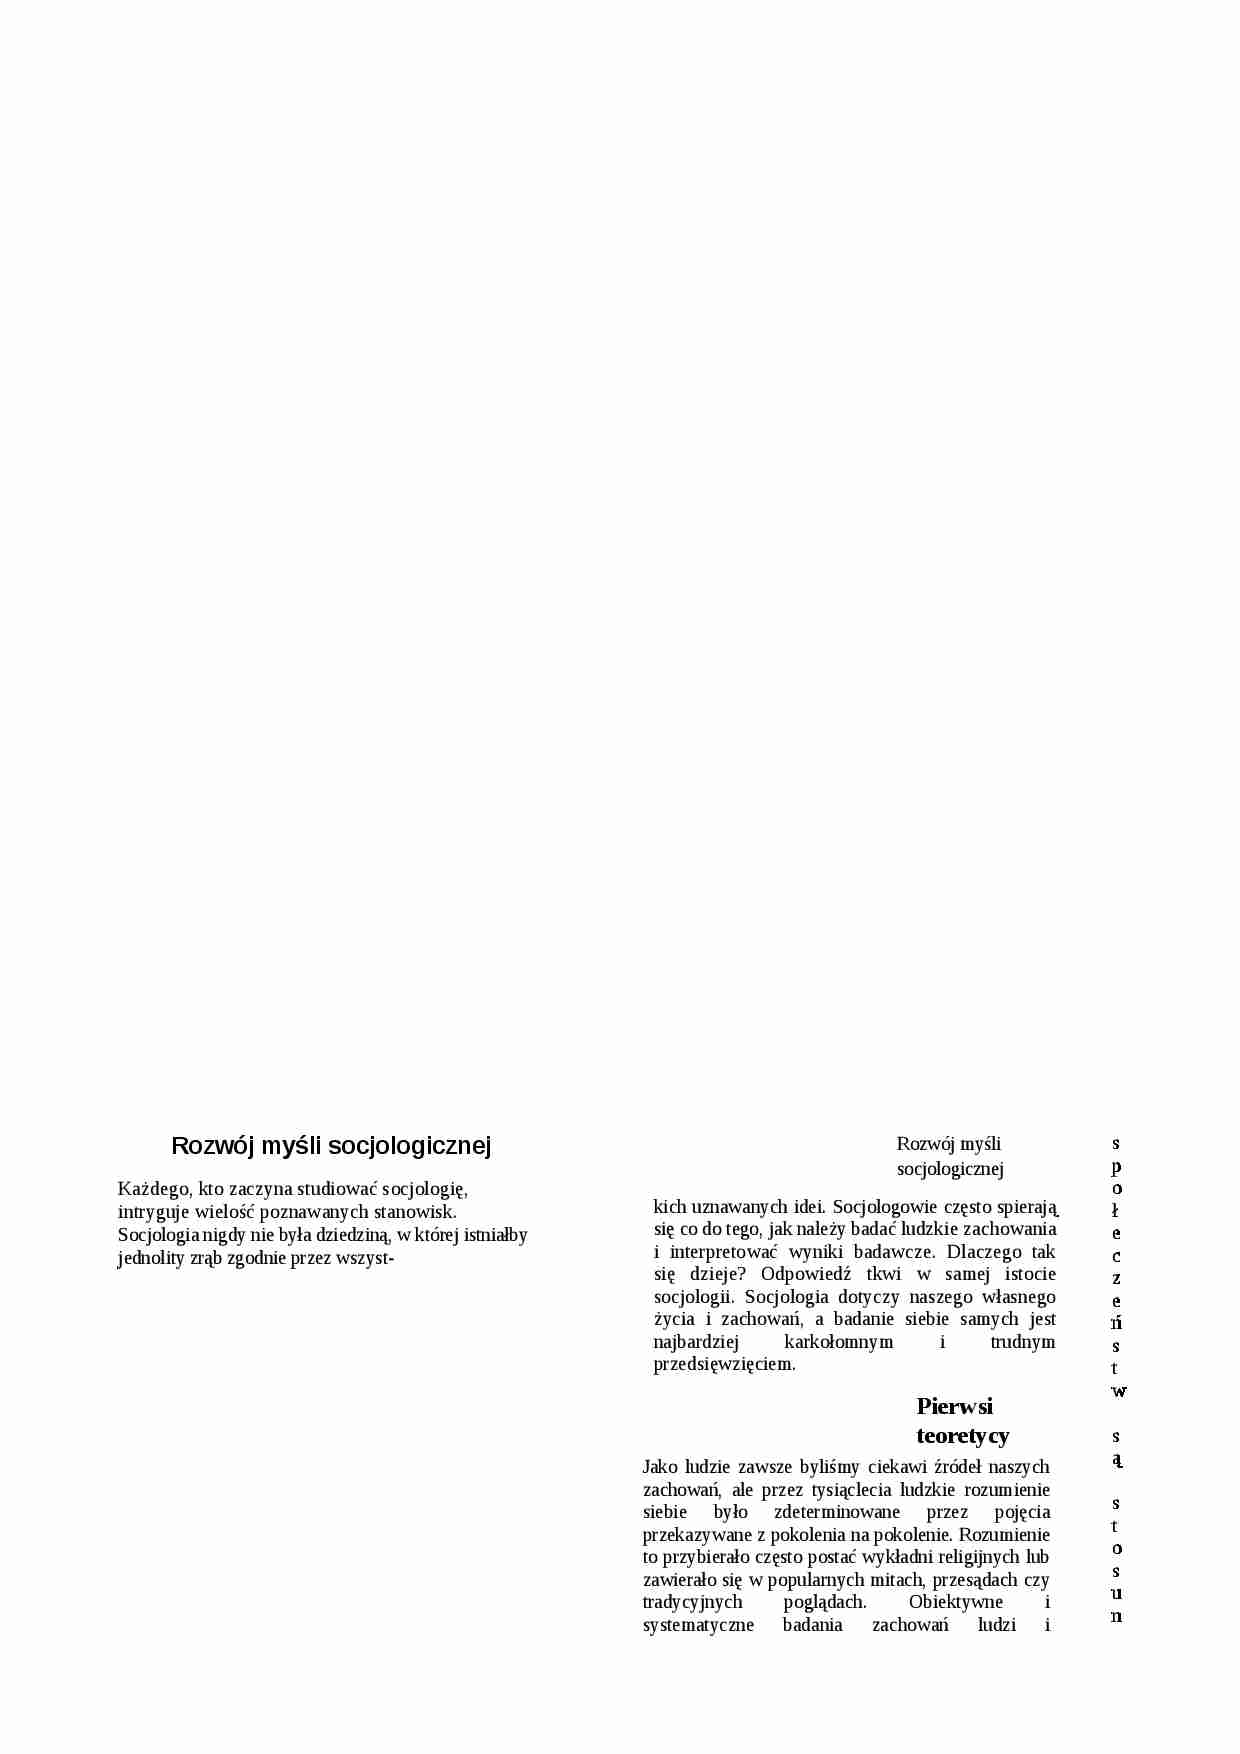 Prekursorzy i teorie socjologiczne - strona 1